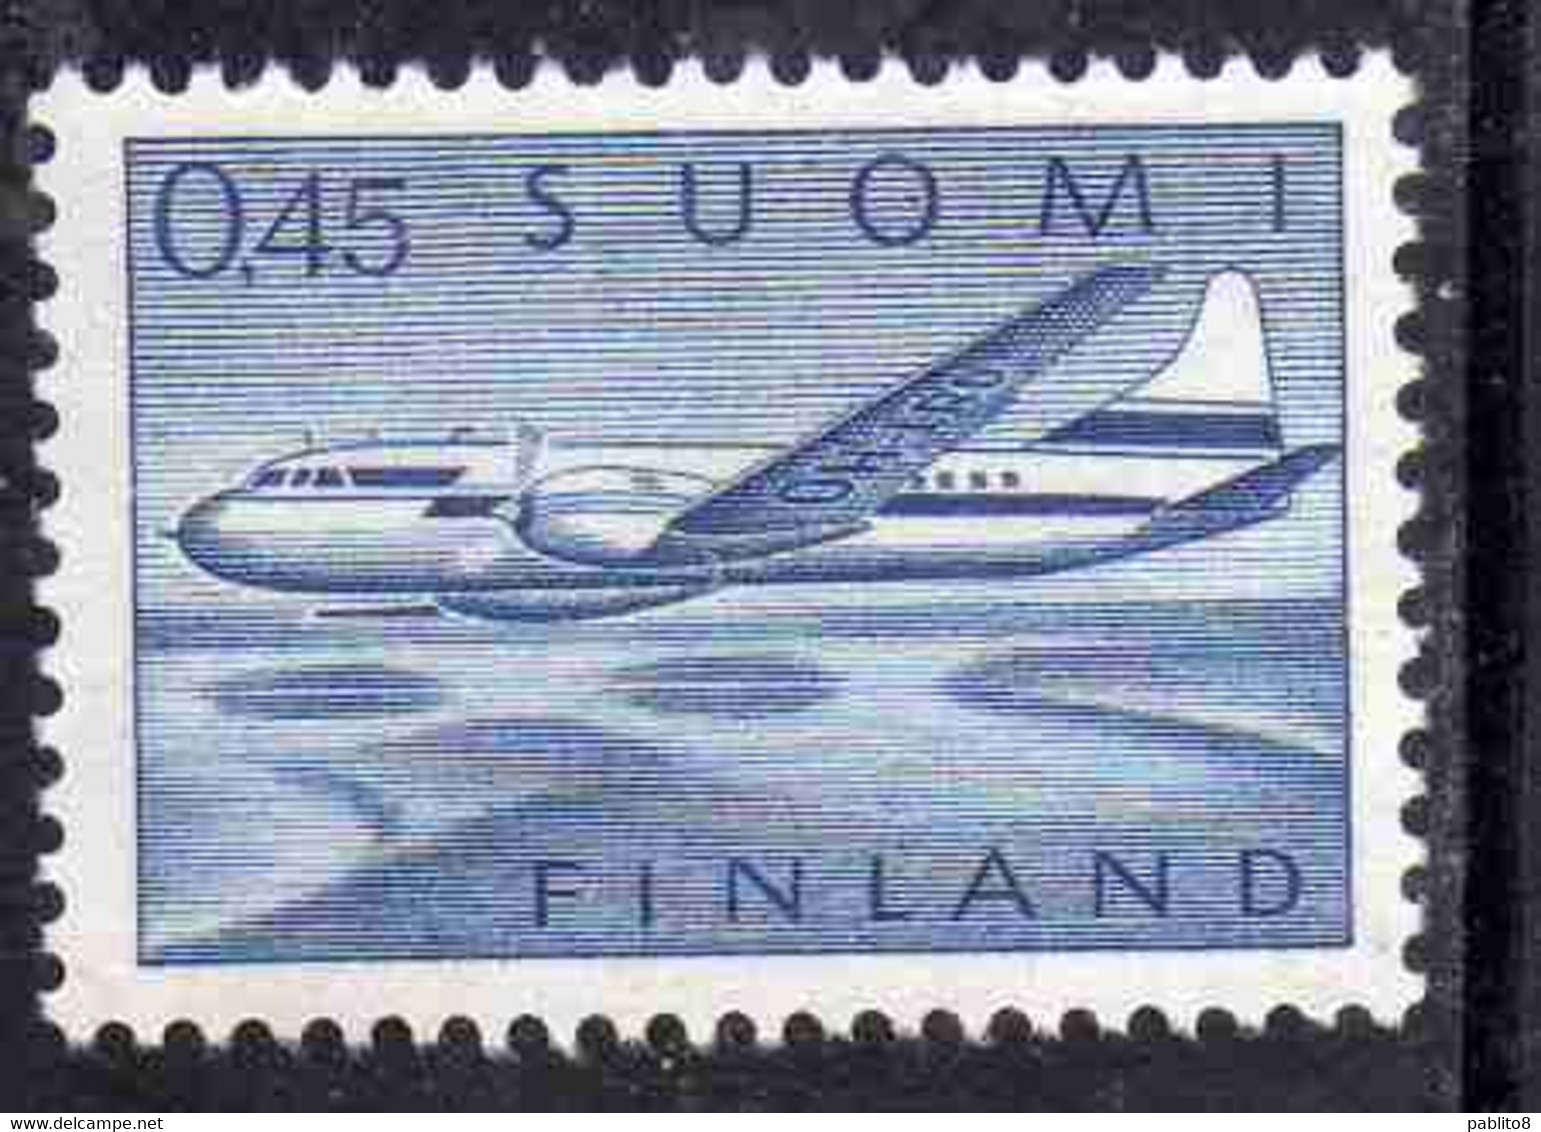 SUOMI FINLAND FINLANDIA FINLANDE 1963 AIR POST MAIL AIRMAIL CONVAIR OVER LAKES 0.45m 45p MNH - Nuovi